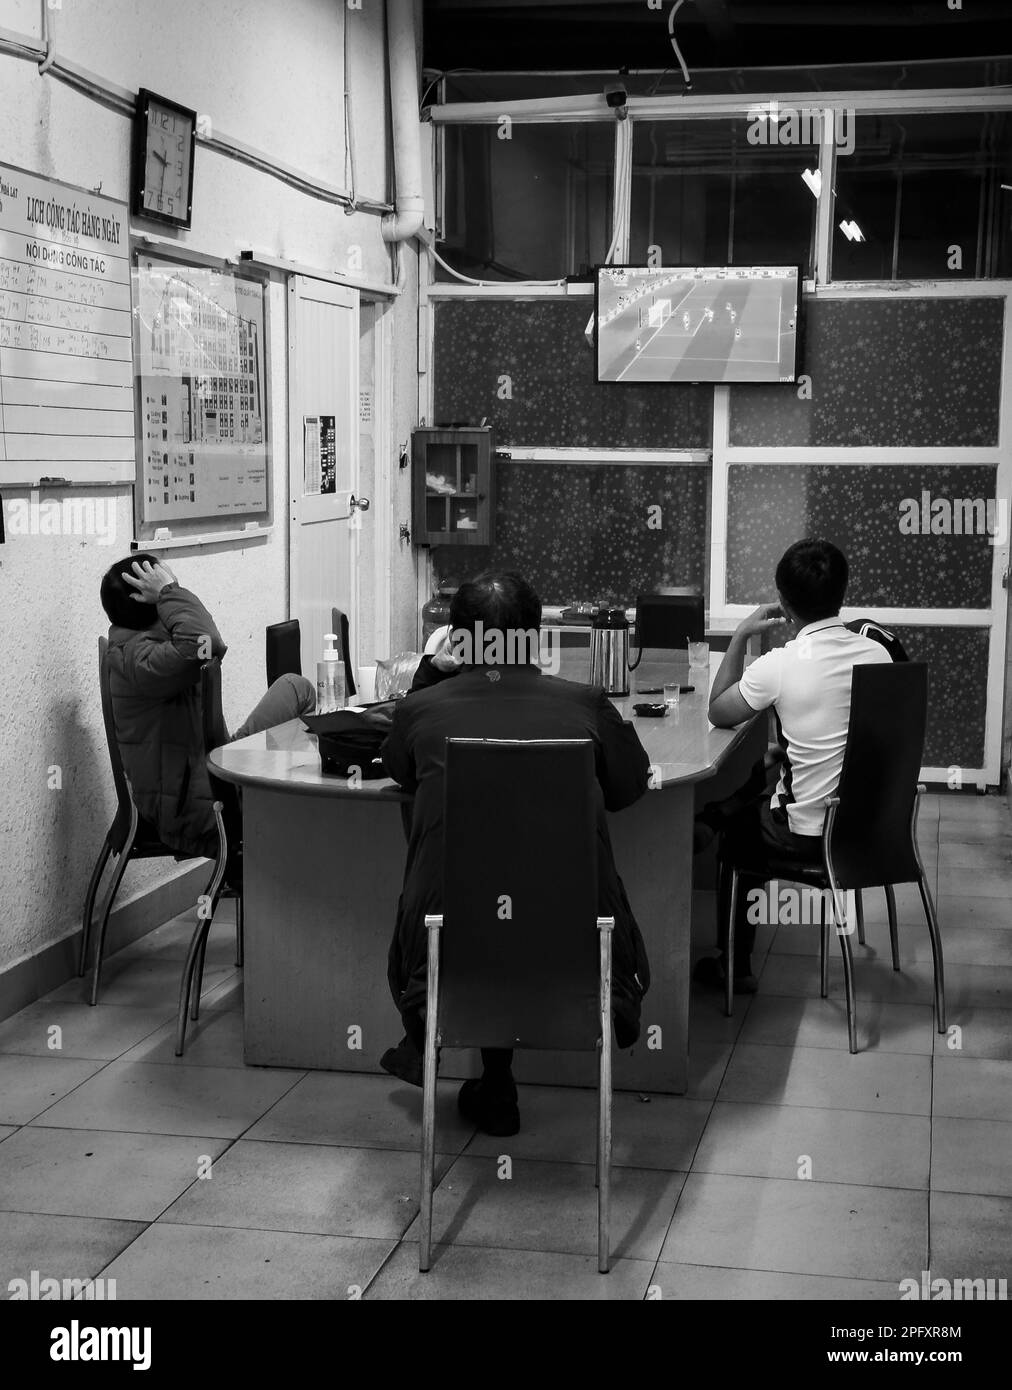 Trois gardes de sécurité du marché de Dalat au Vietnam s'assoient pour assister à un match de football à la télévision qui aura lieu lors de la coupe du monde de la FIFA 2022. Banque D'Images